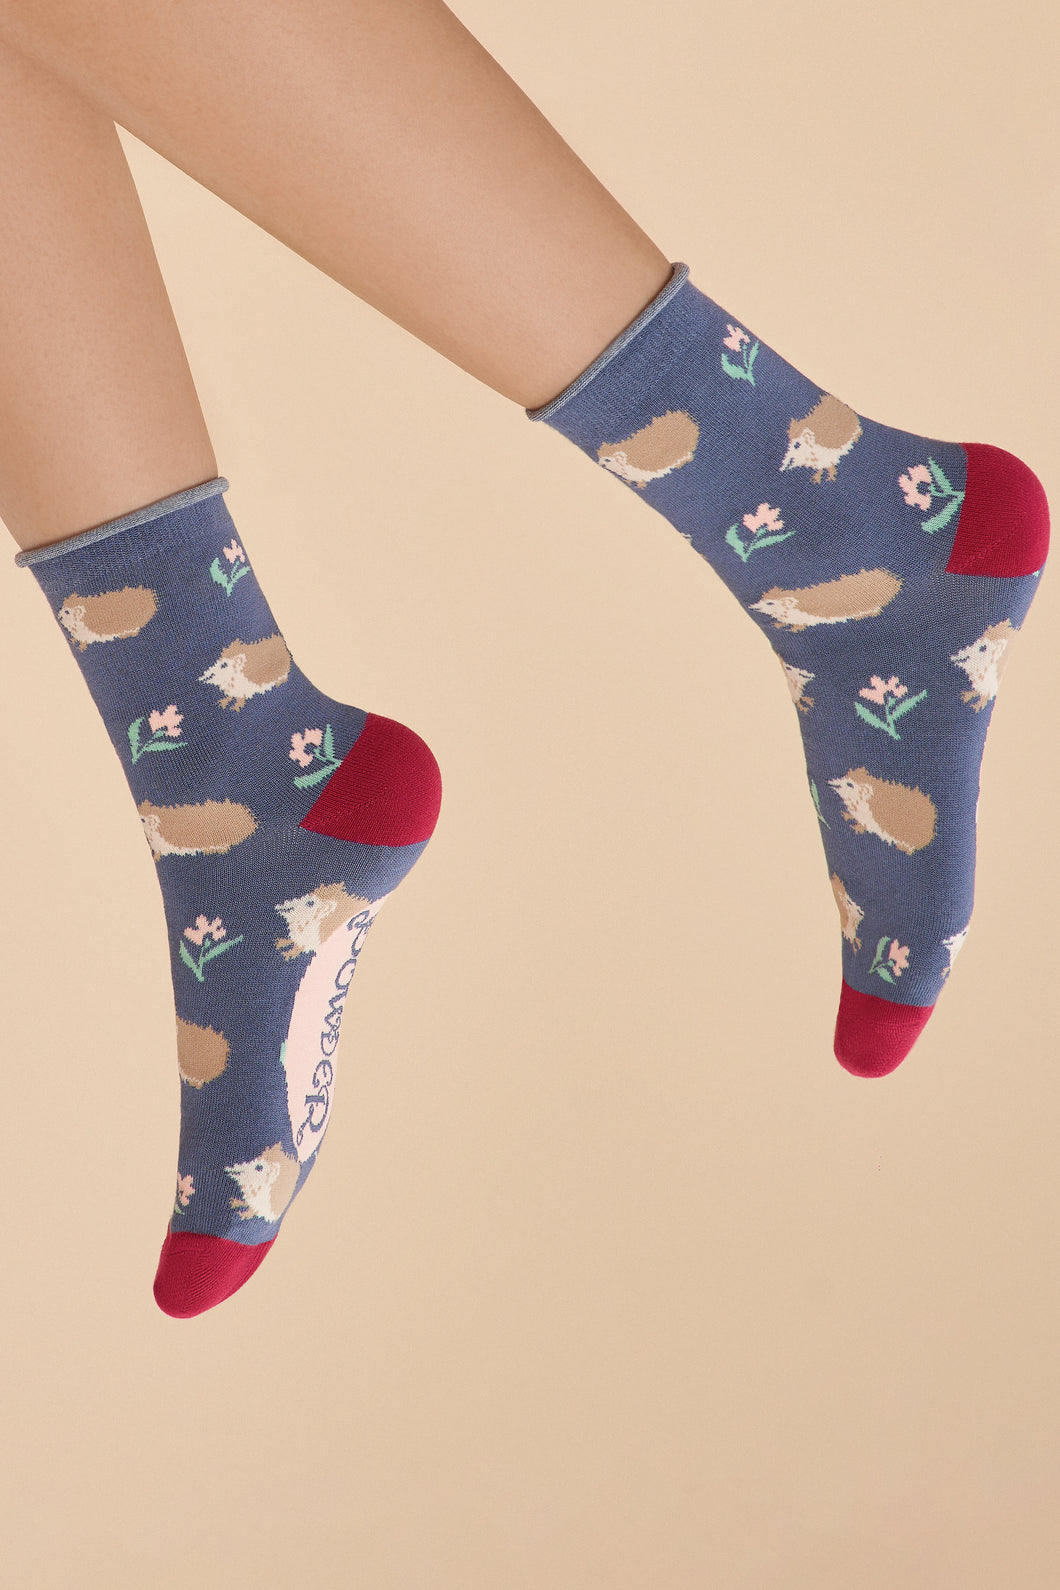 Snuffling Hedgehogs Ankle Socks - Navy